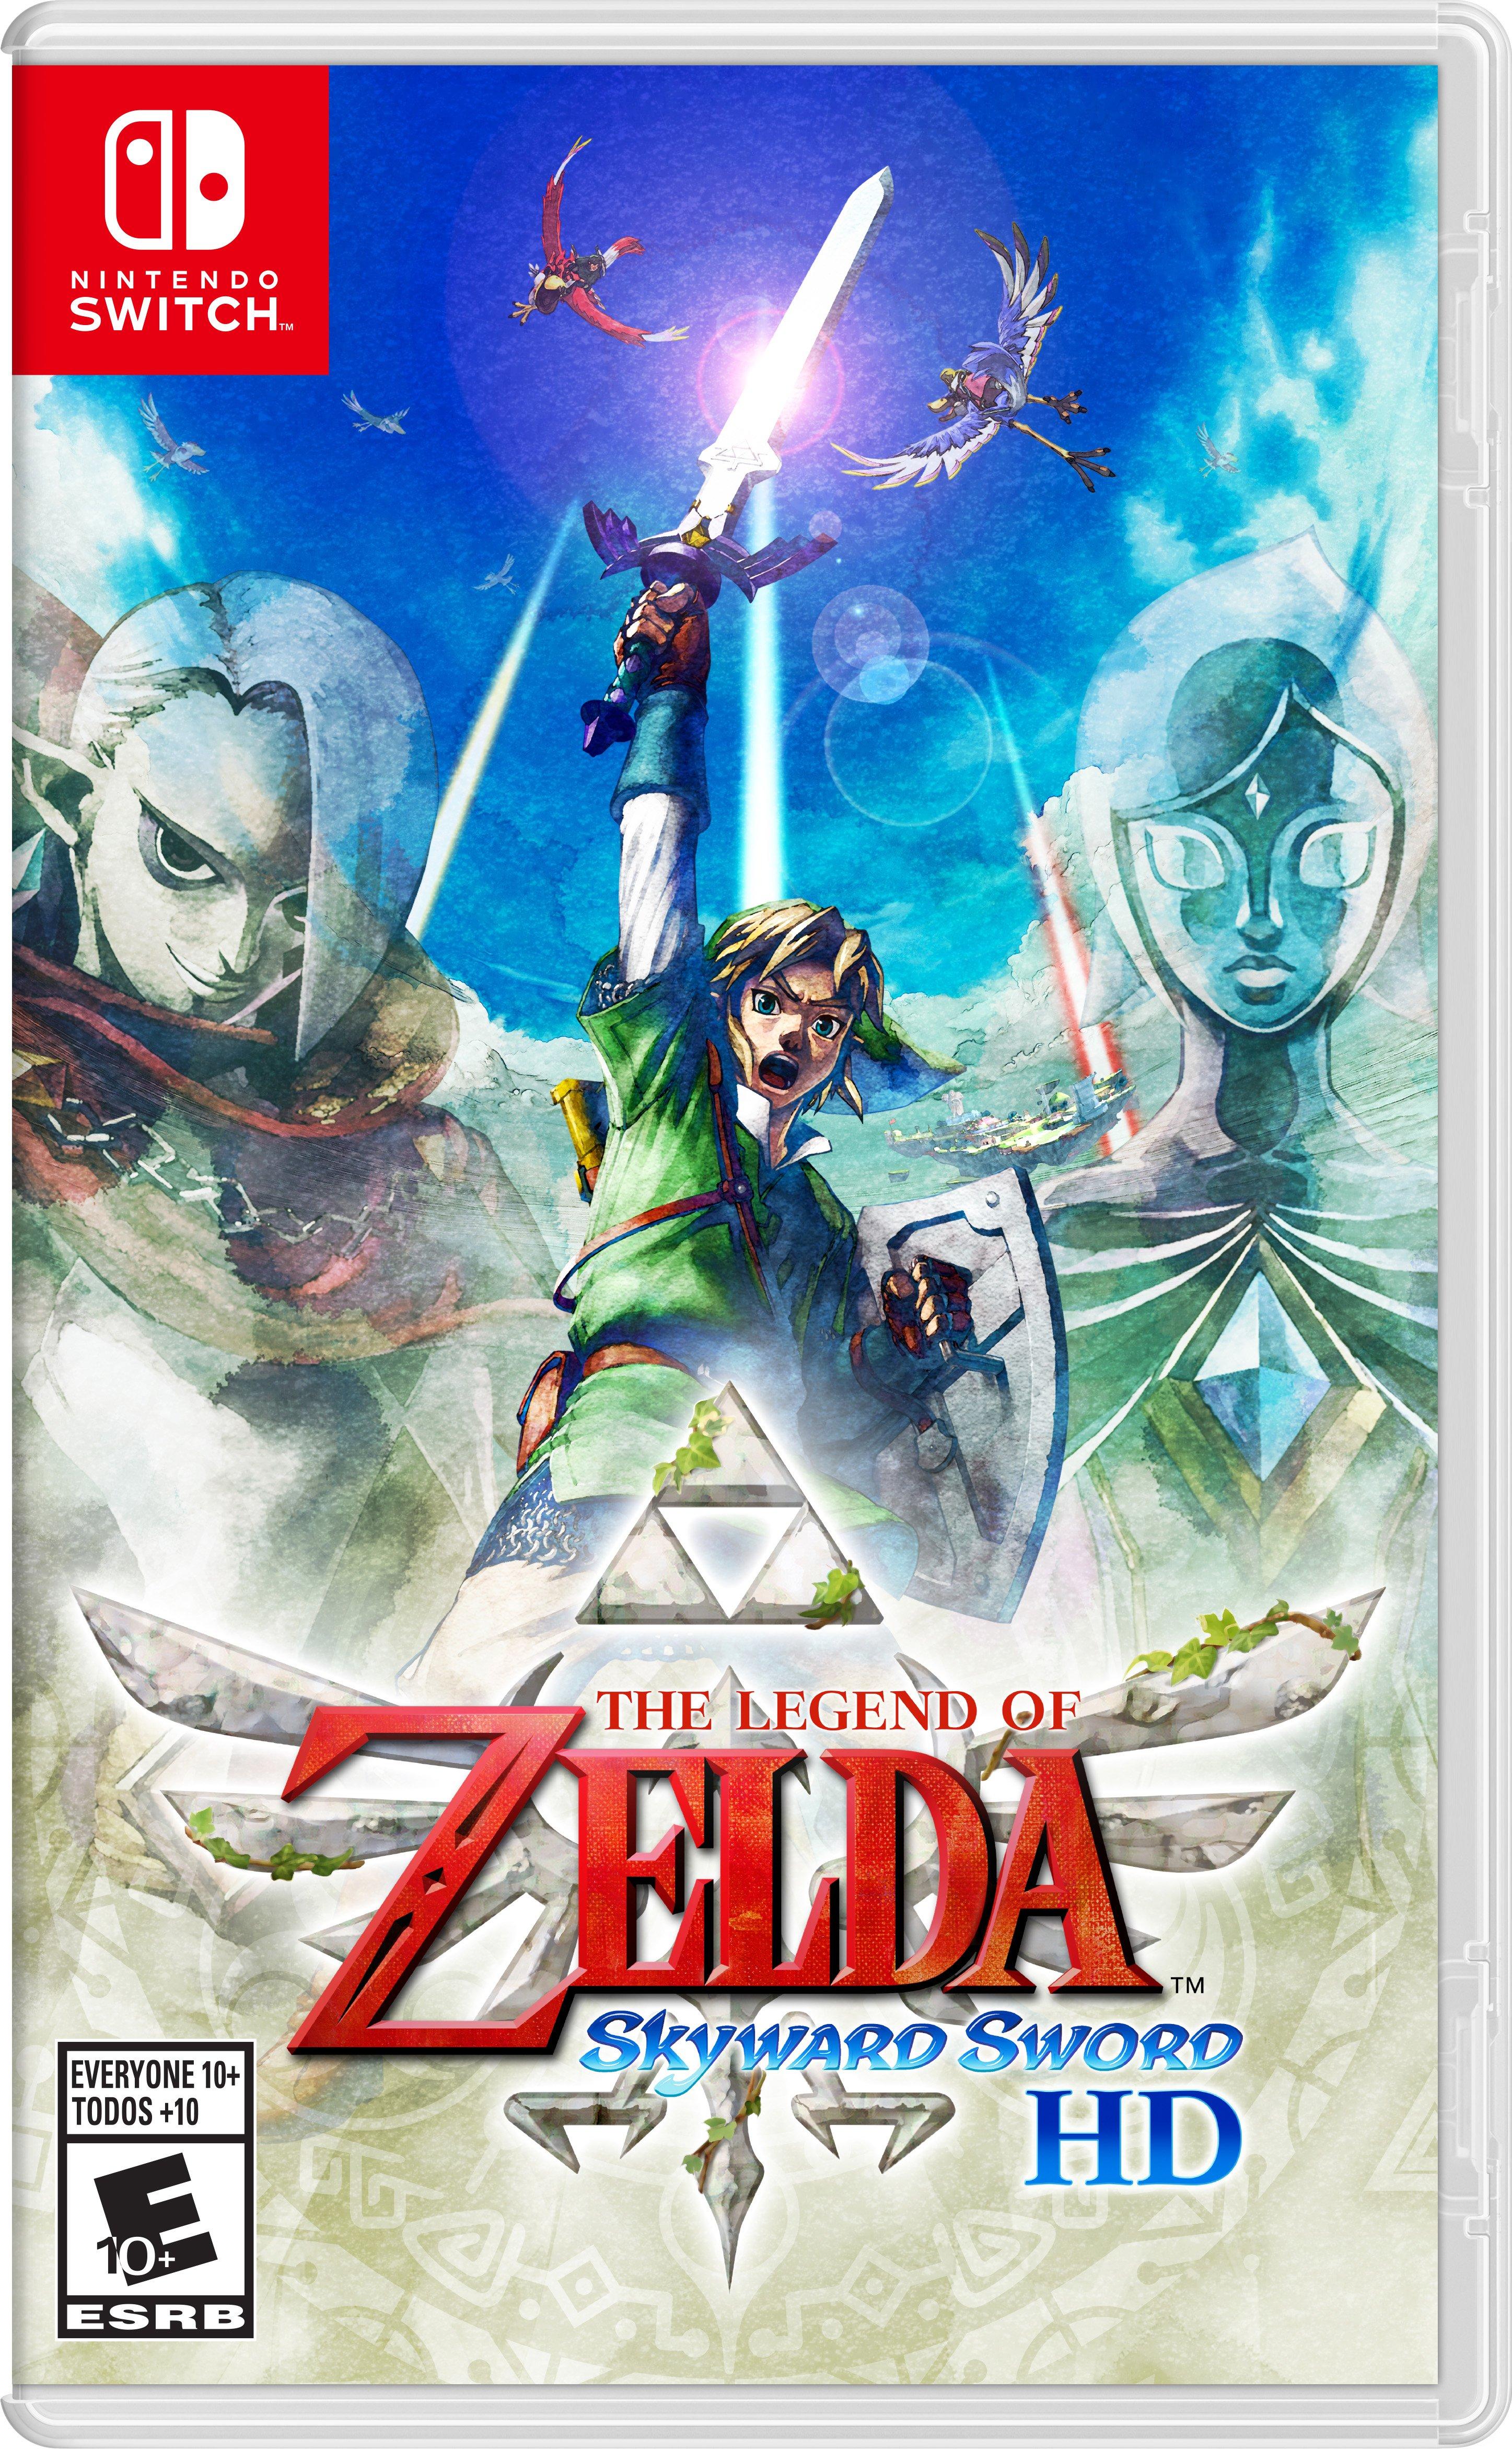 The Legend of Zelda - Nintendo, Nintendo